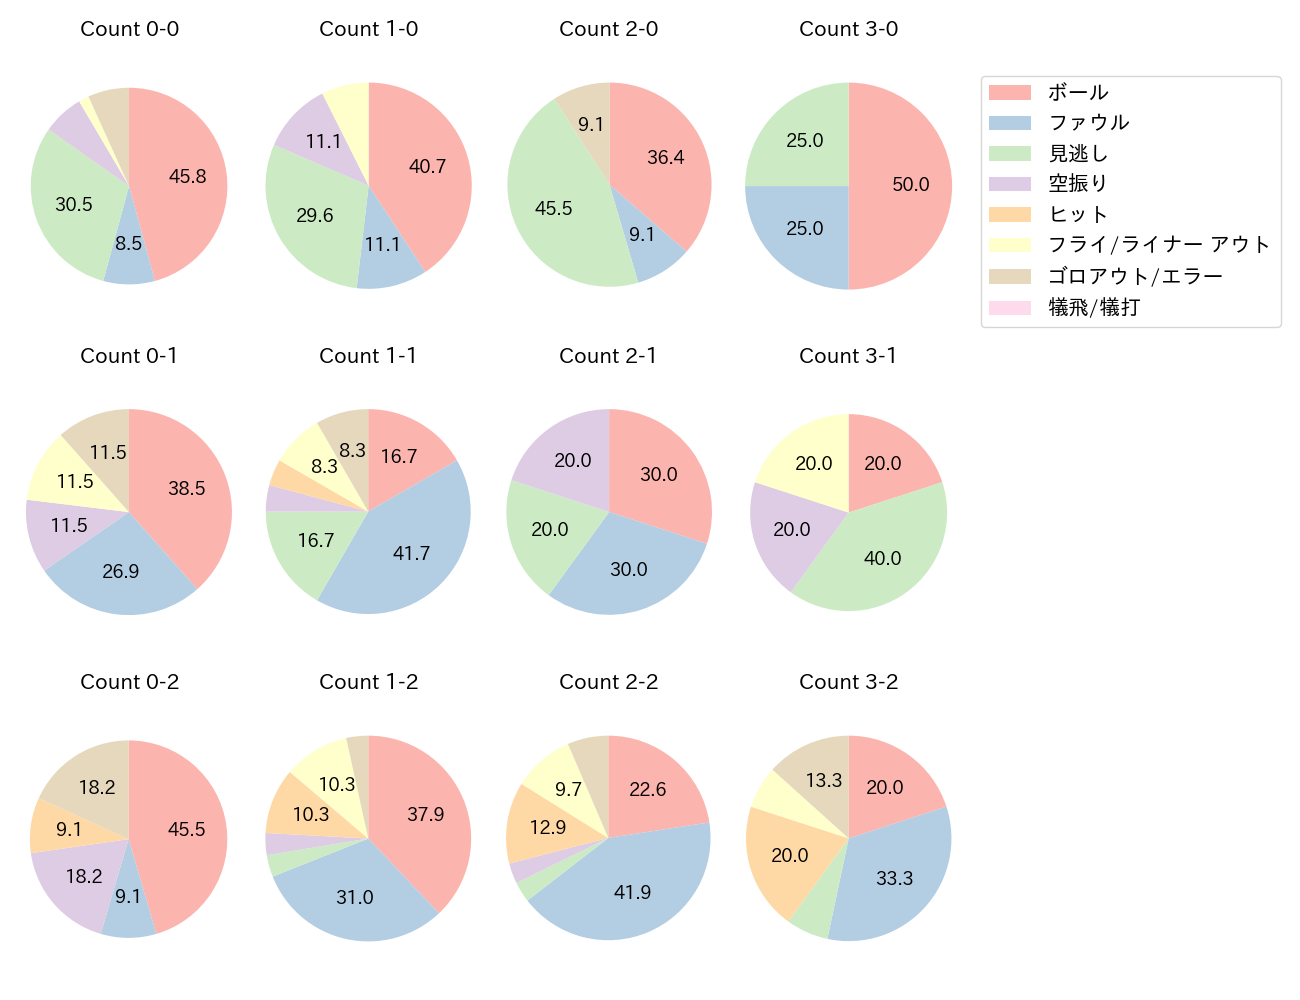 黒川 史陽の球数分布(2022年5月)